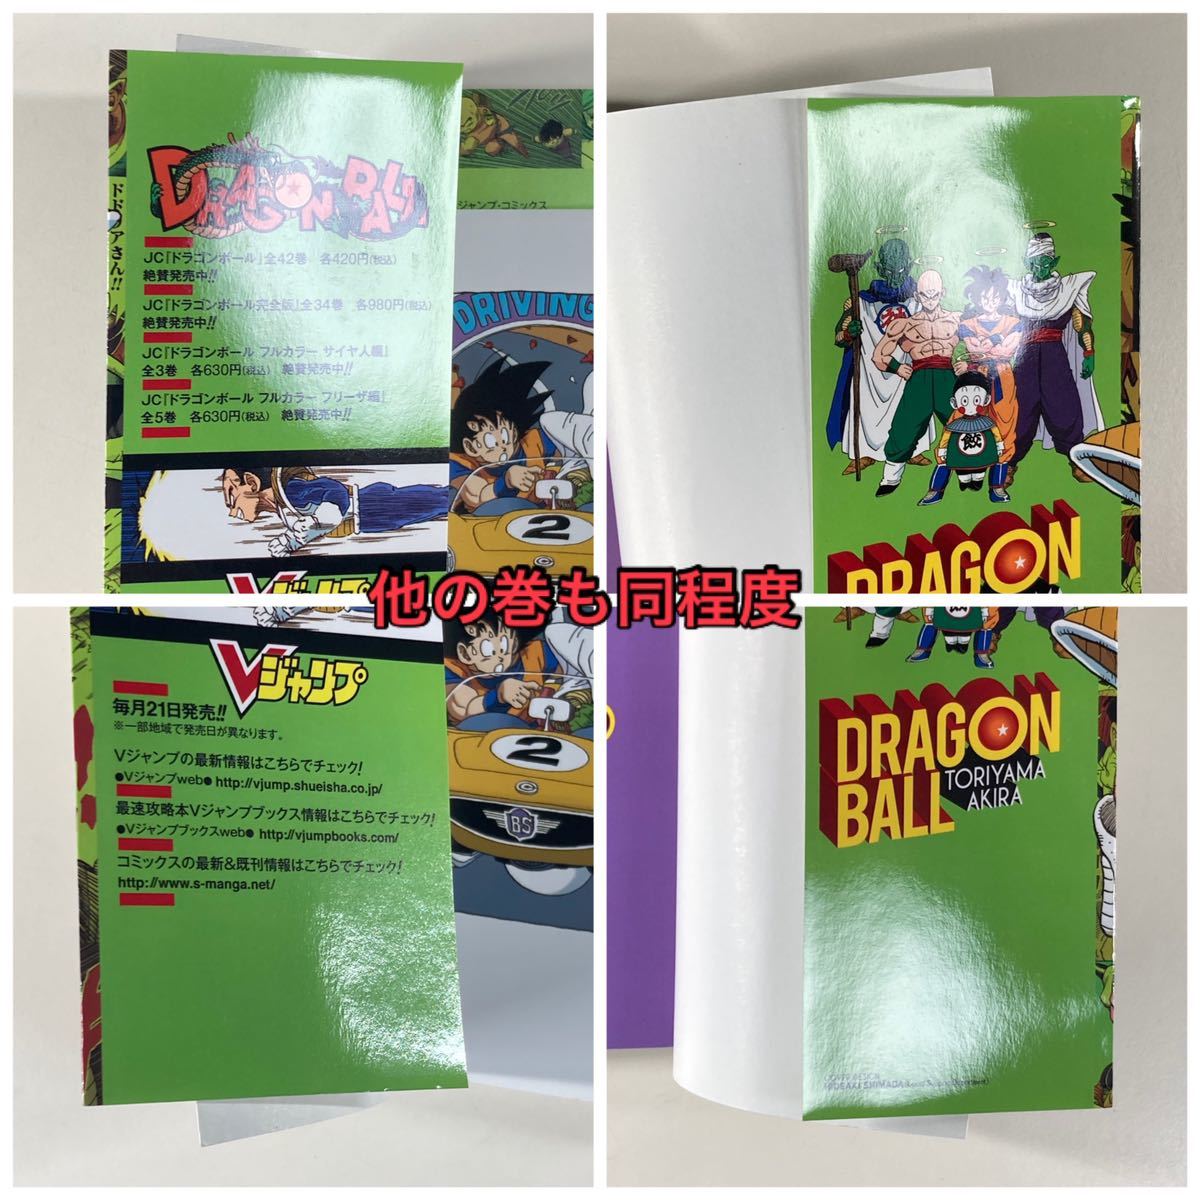 ドラゴンボール フルカラー フリーザ編 鳥山明 全巻セット 全5巻 /DRAGON BALL カラー_画像9